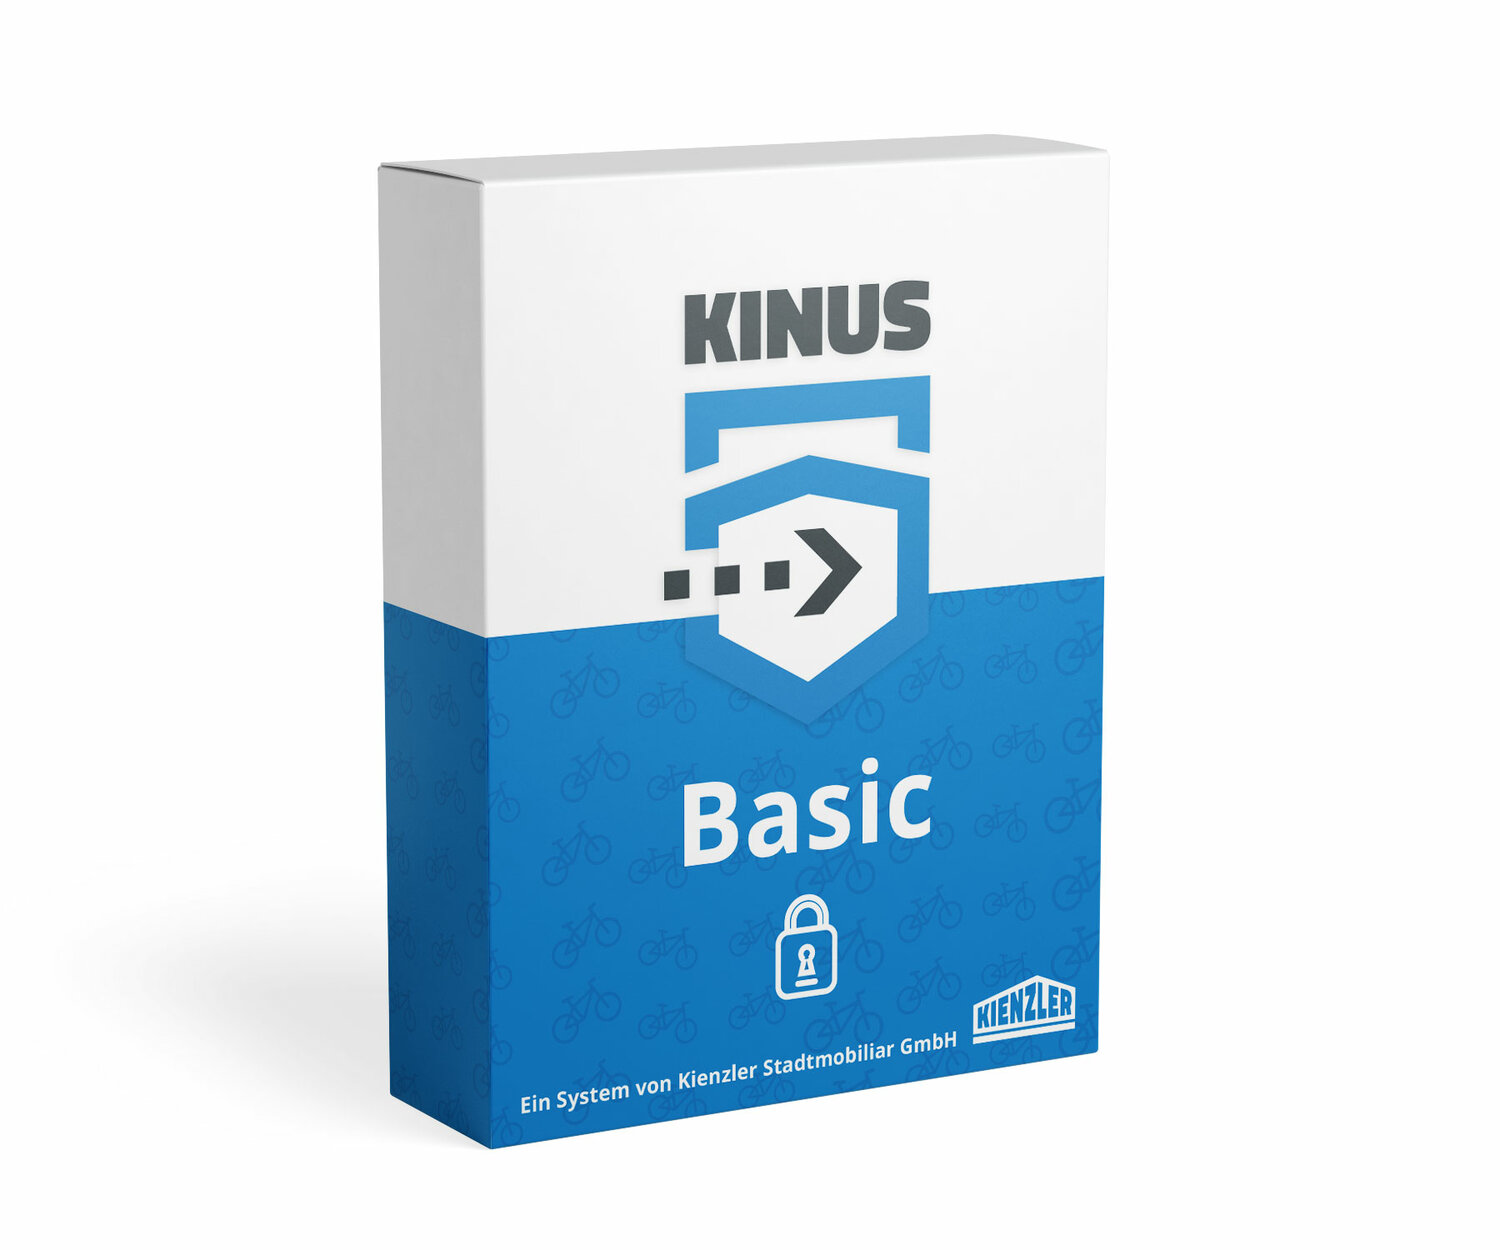 Produktverpackung der Software KINUS Basic